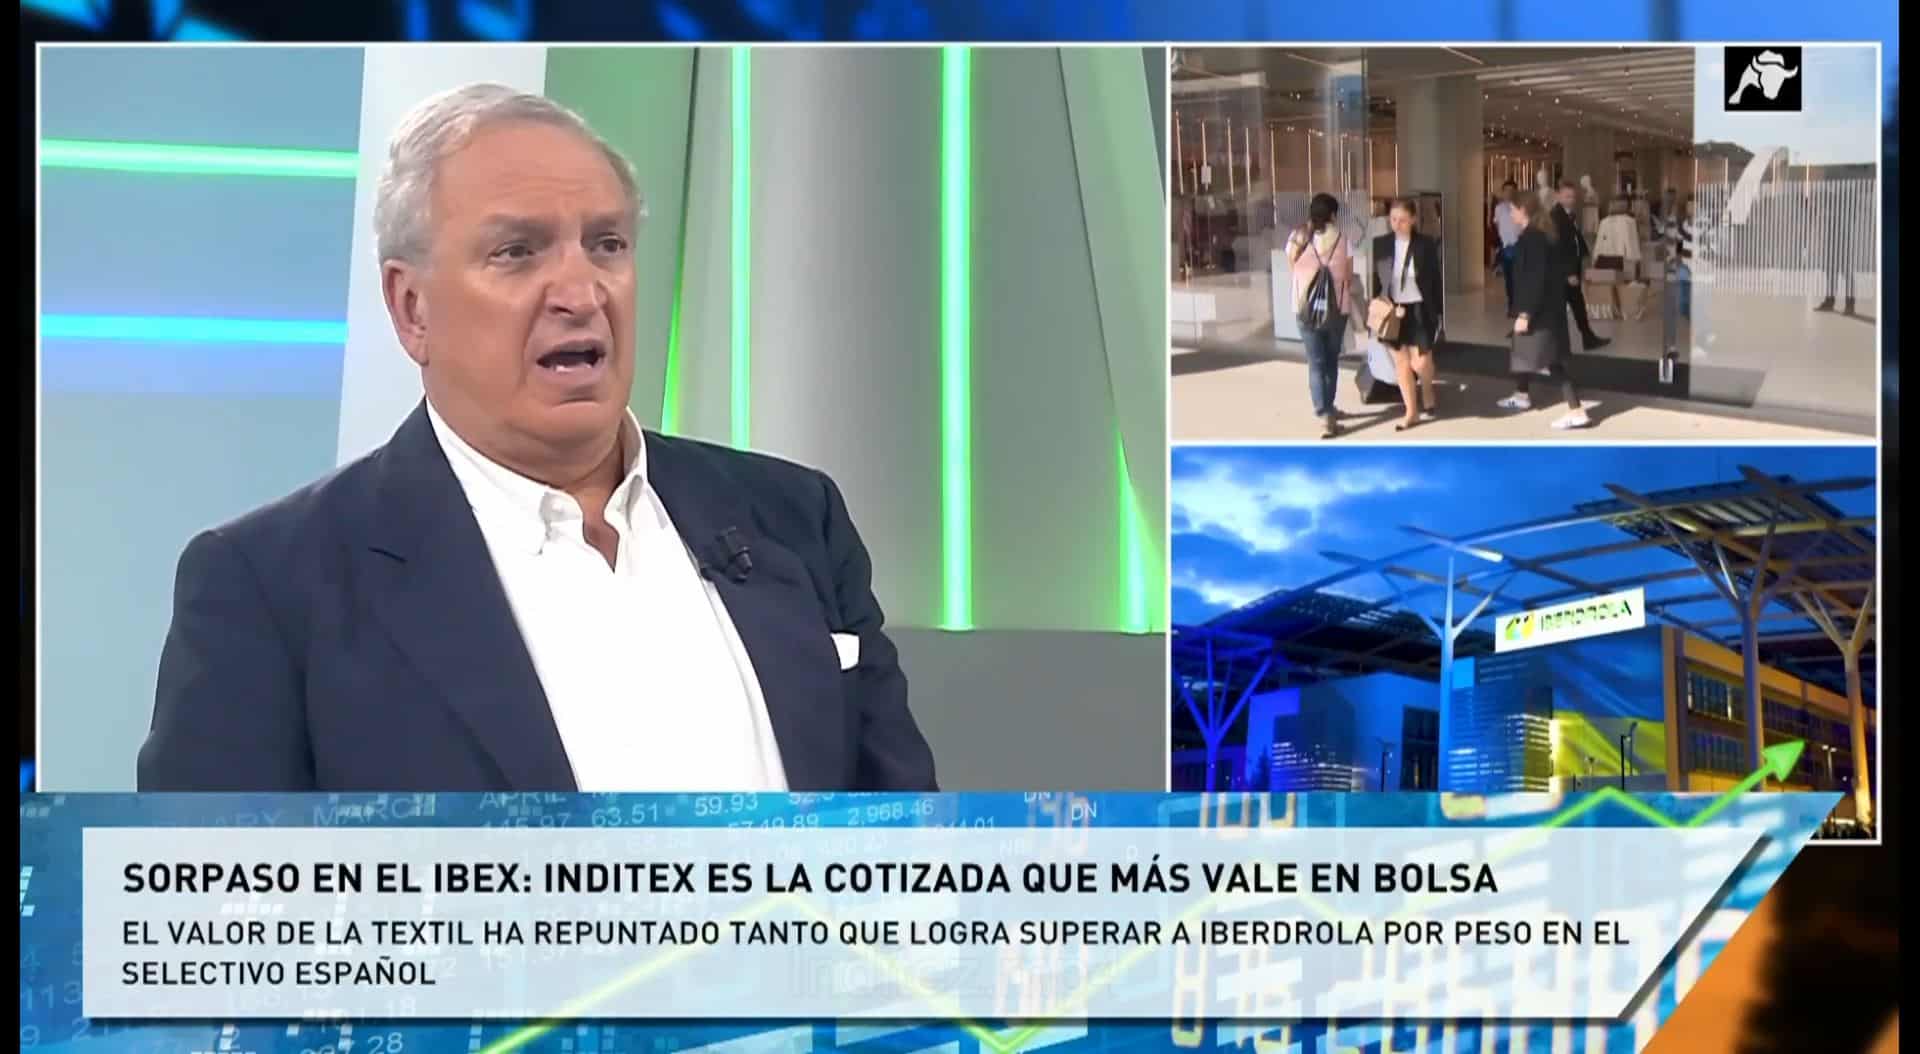 Inditex reina en el Ibex: sorpassa a Iberdrola y se convierte en un «valor de referencia»